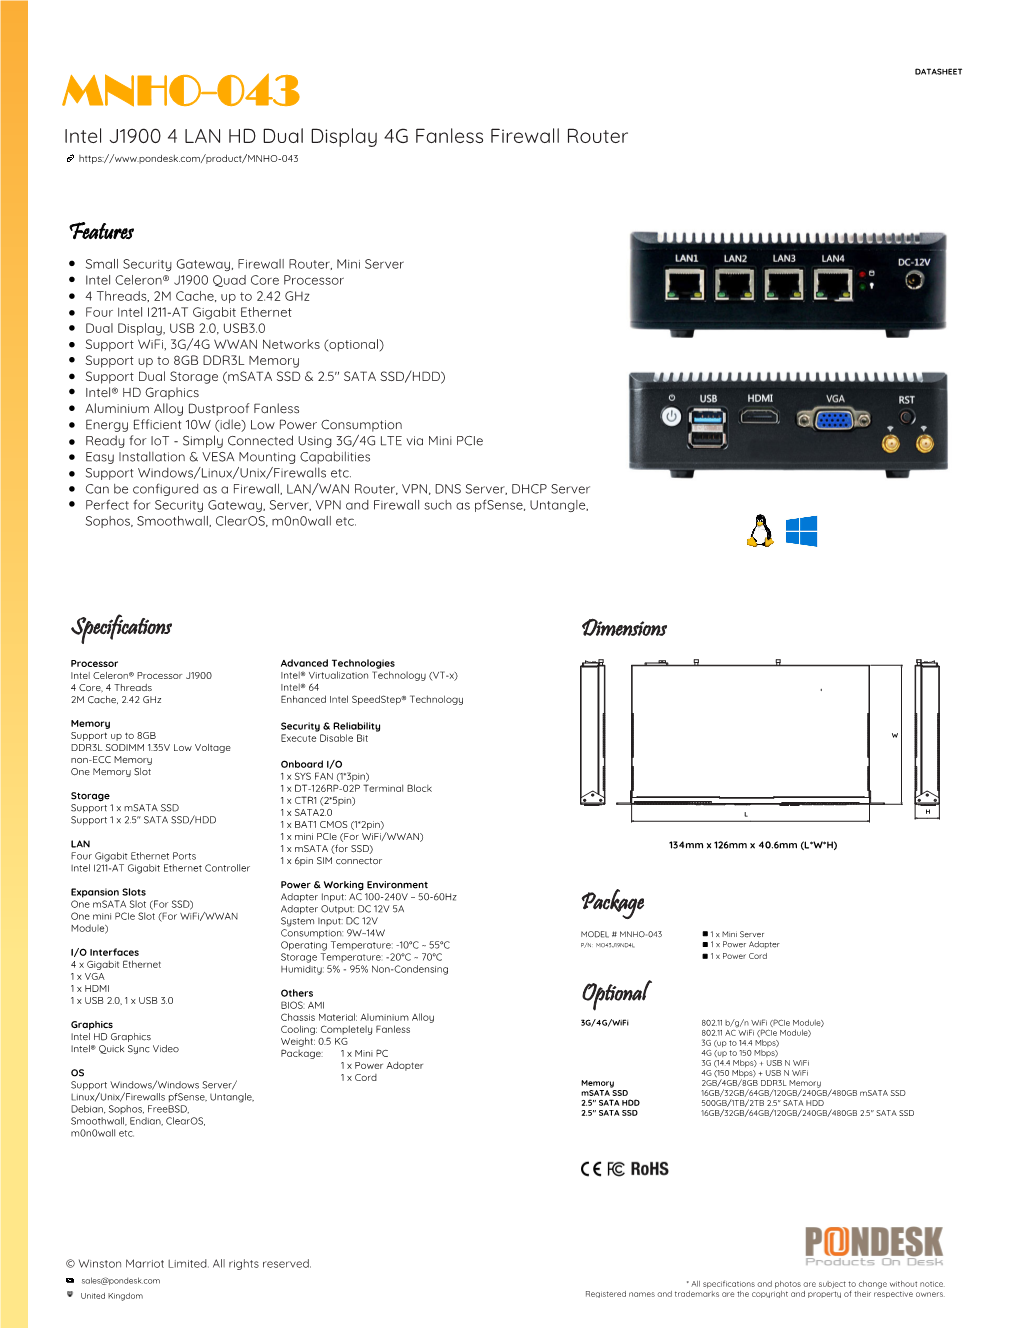 MNHO-043 DATASHEET Intel J1900 4 LAN HD Dual Display 4G Fanless Firewall Router